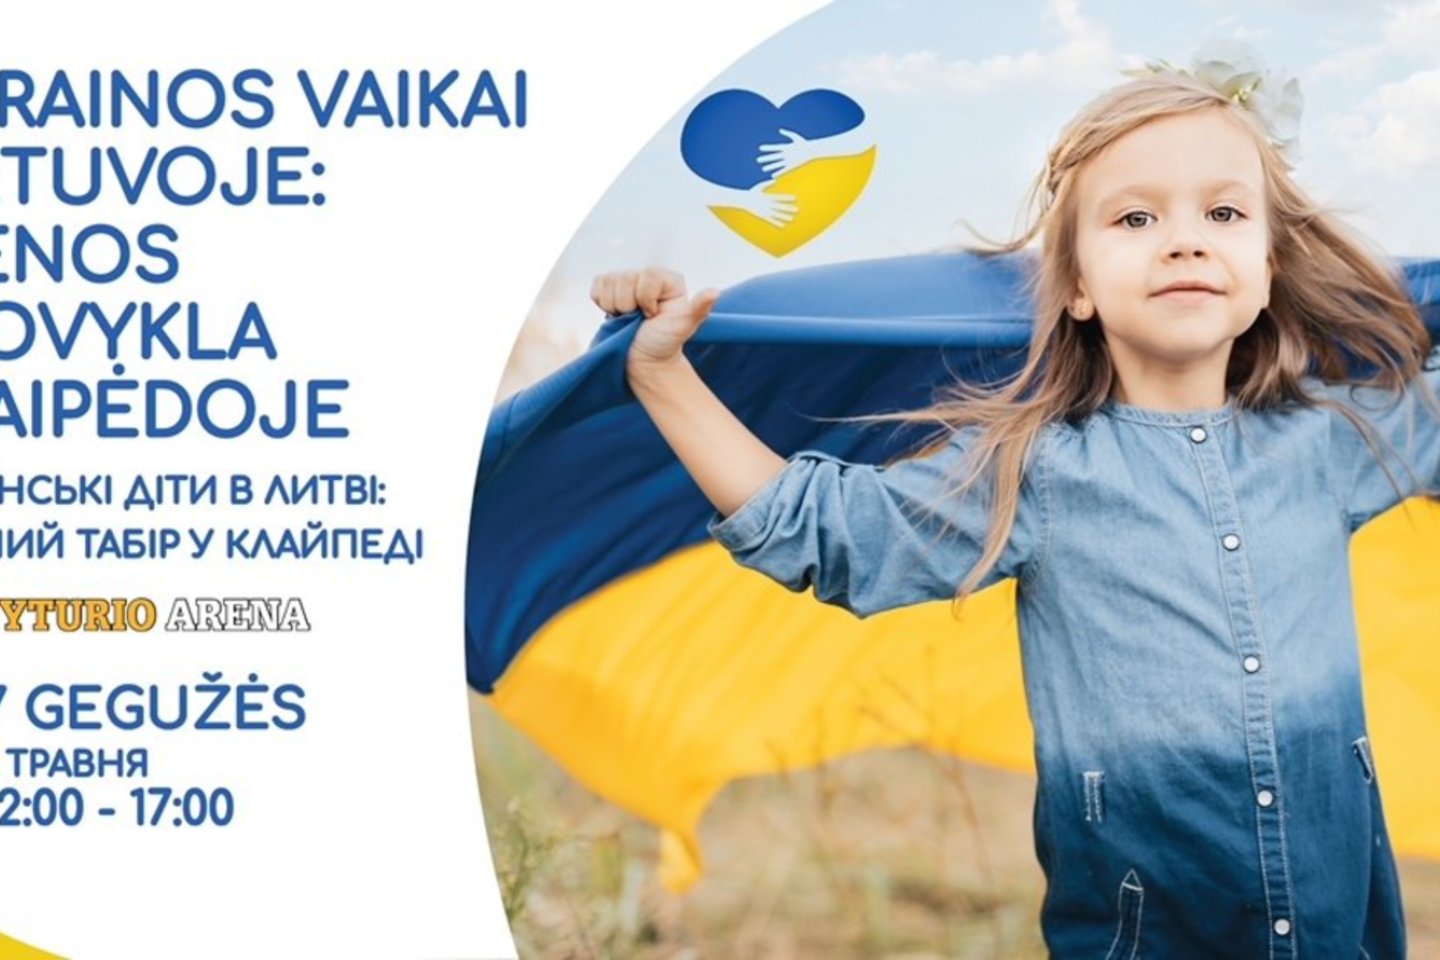  Gegužės 7 d. Klaipėdoje organizuojama dienos stovykla, kurioje tikimasi sulaukti apie 1500 ukrainiečių vaikų su mamomis.<br>Organizatorių nuotr.